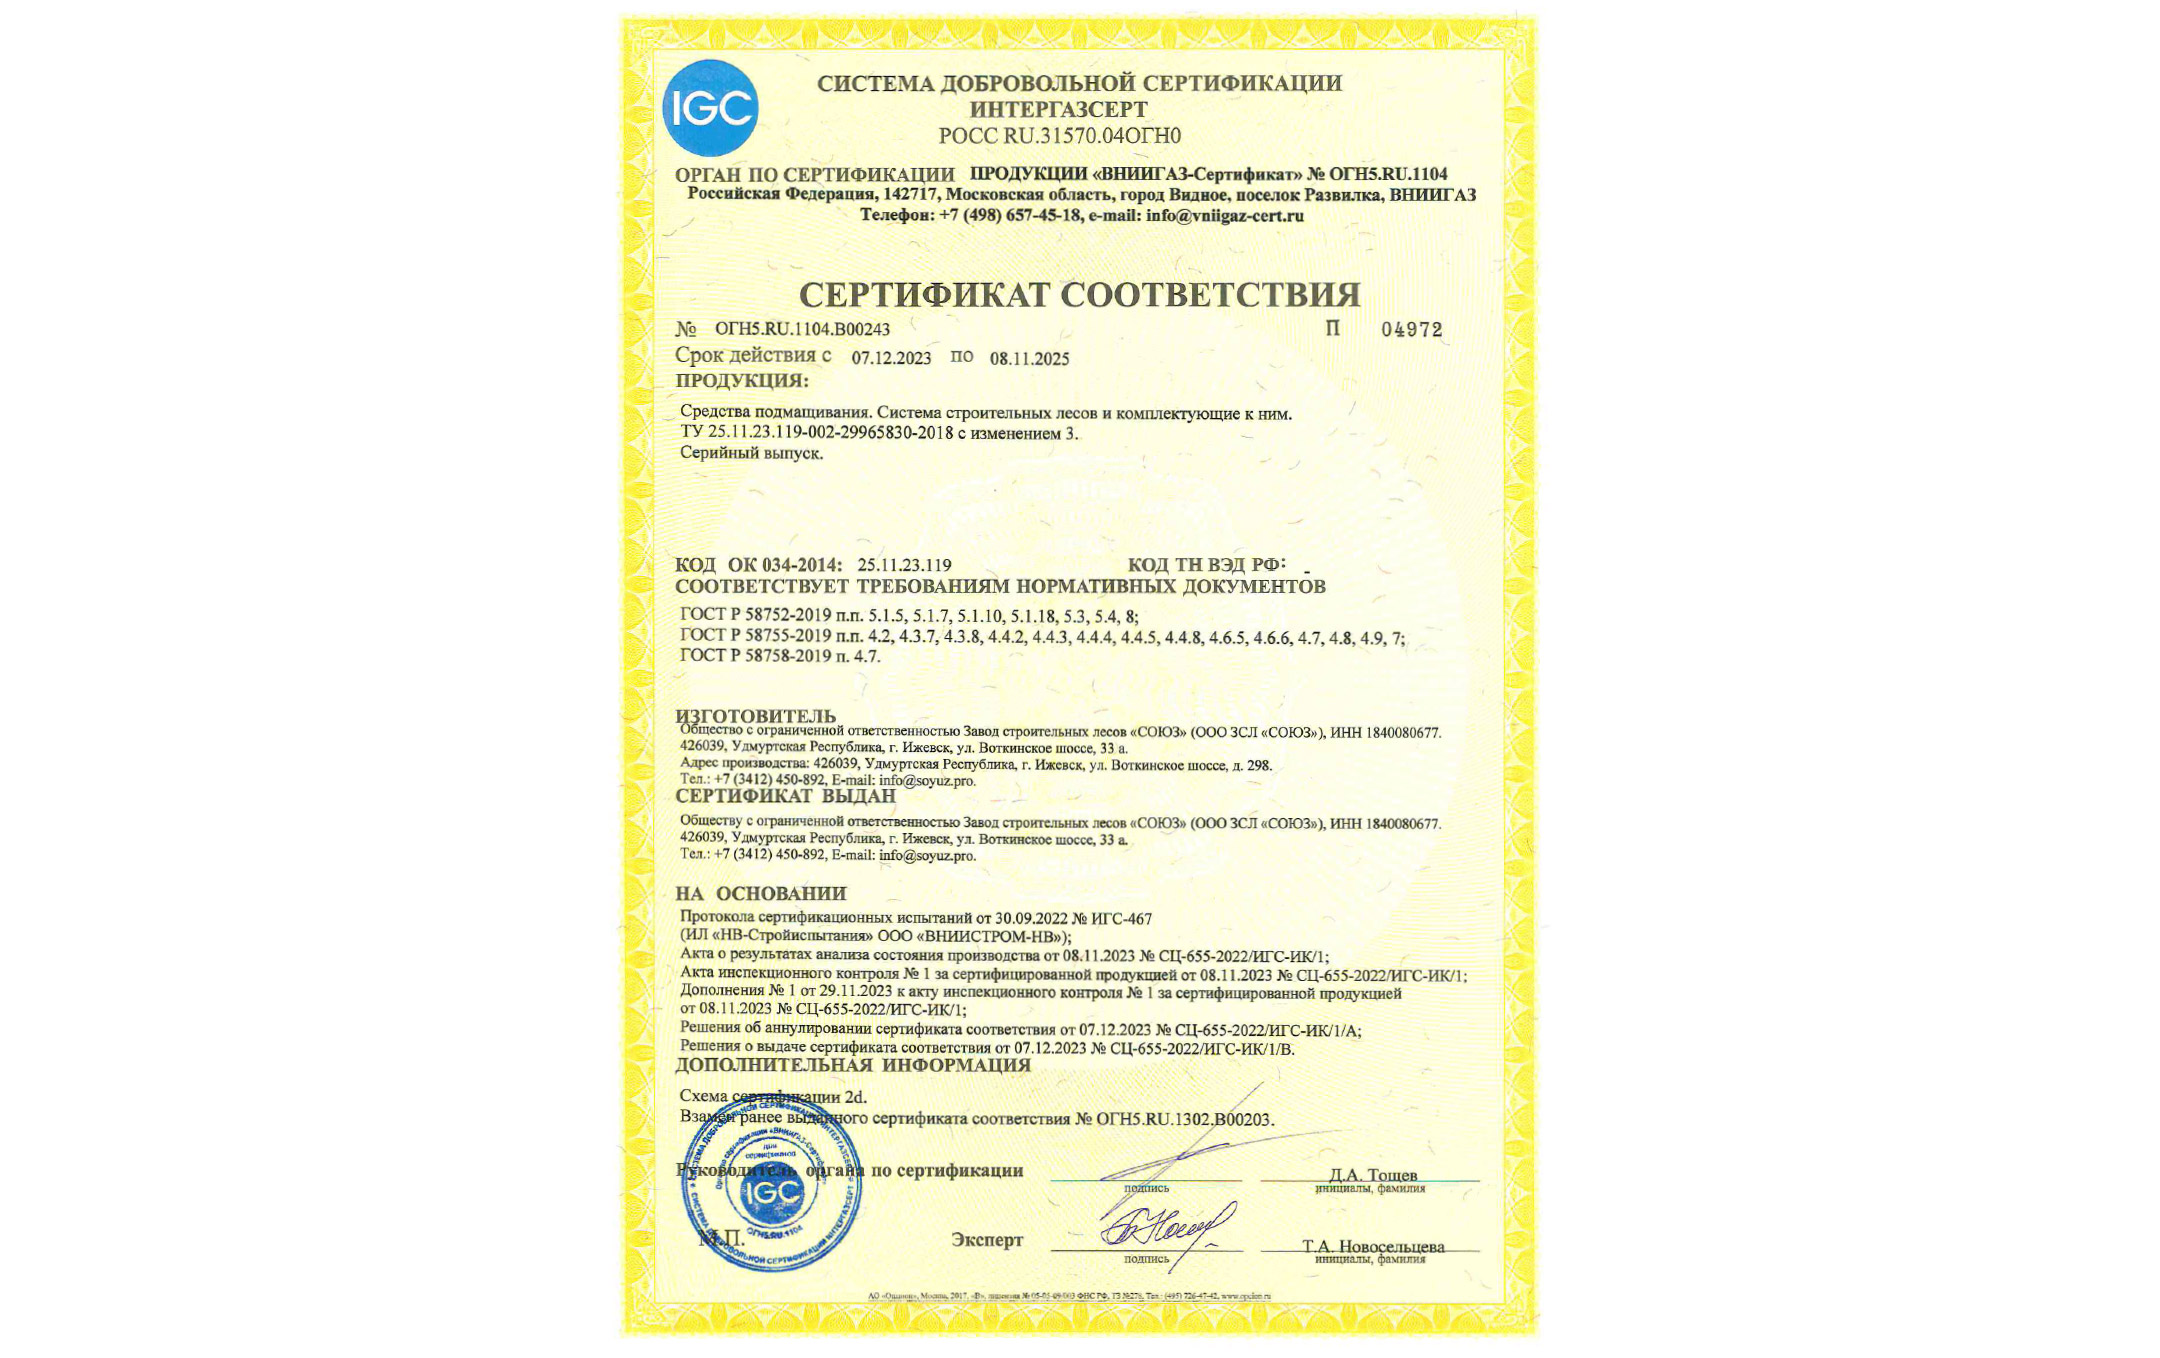 Компания «СОЮЗ» получила сертификат ИНТЕРГАЗСЕРТ